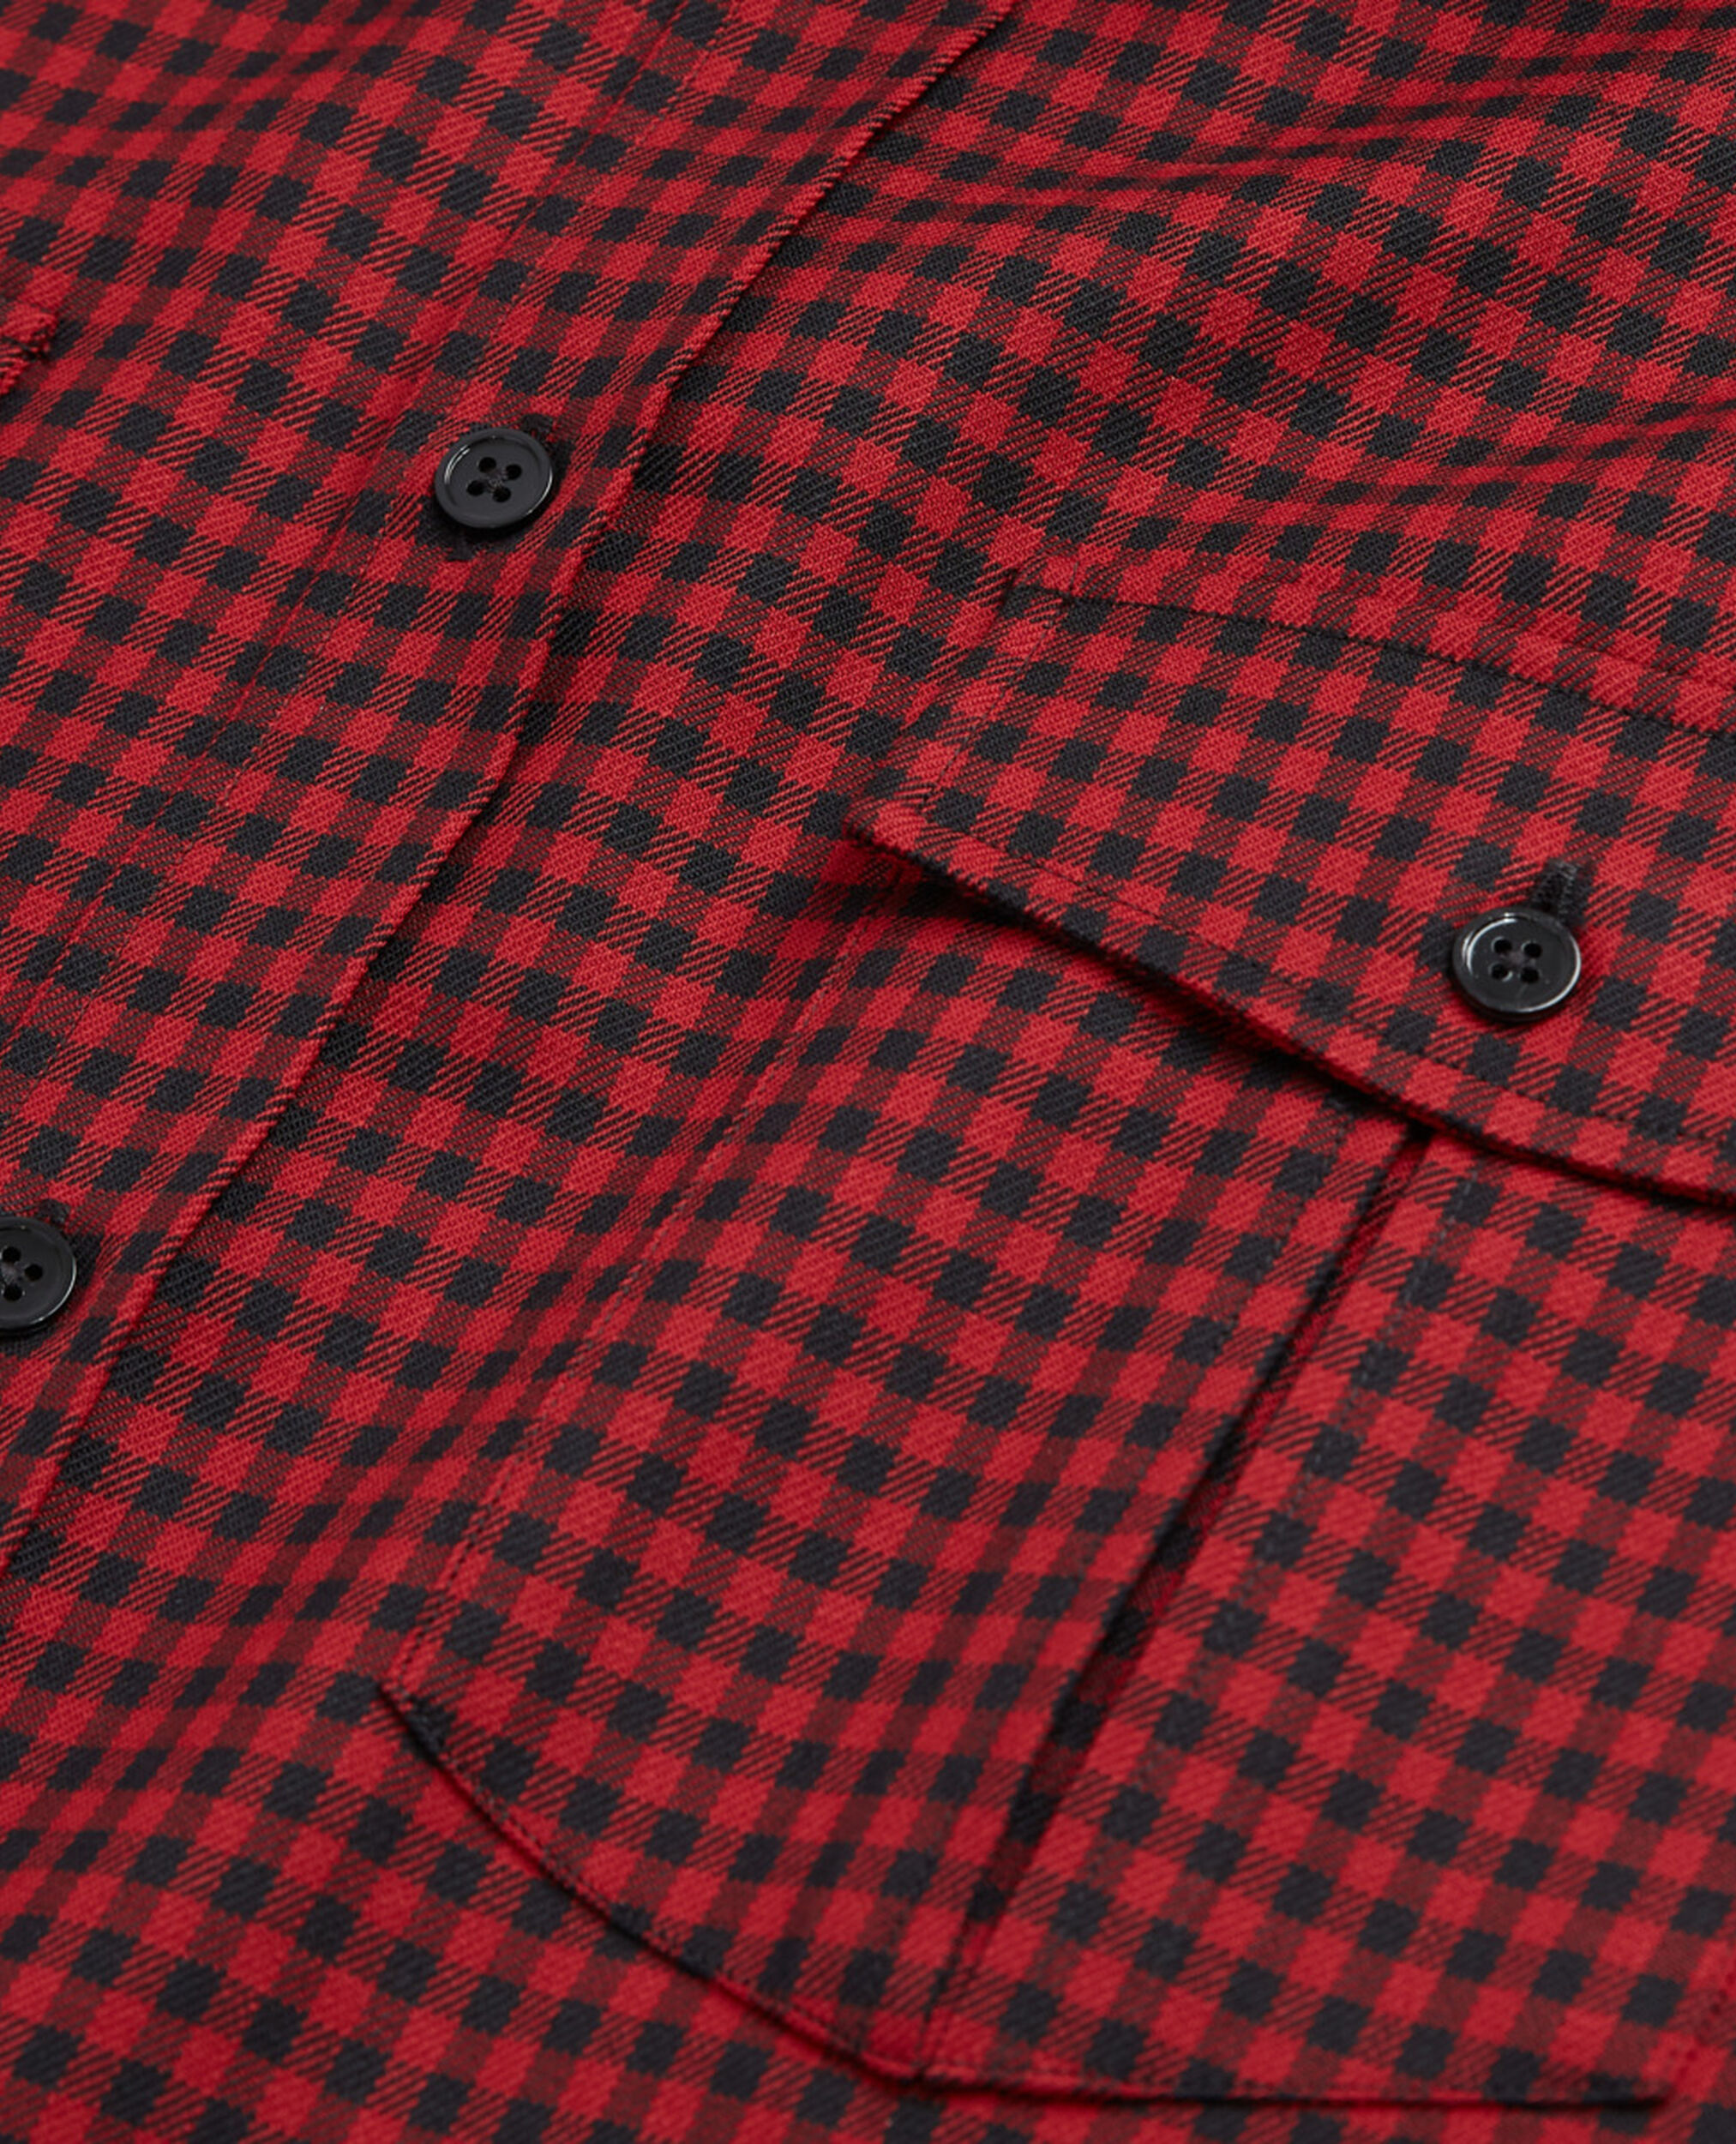 Camisa lana cuadros con cuello clásico, RED / BLACK, hi-res image number null